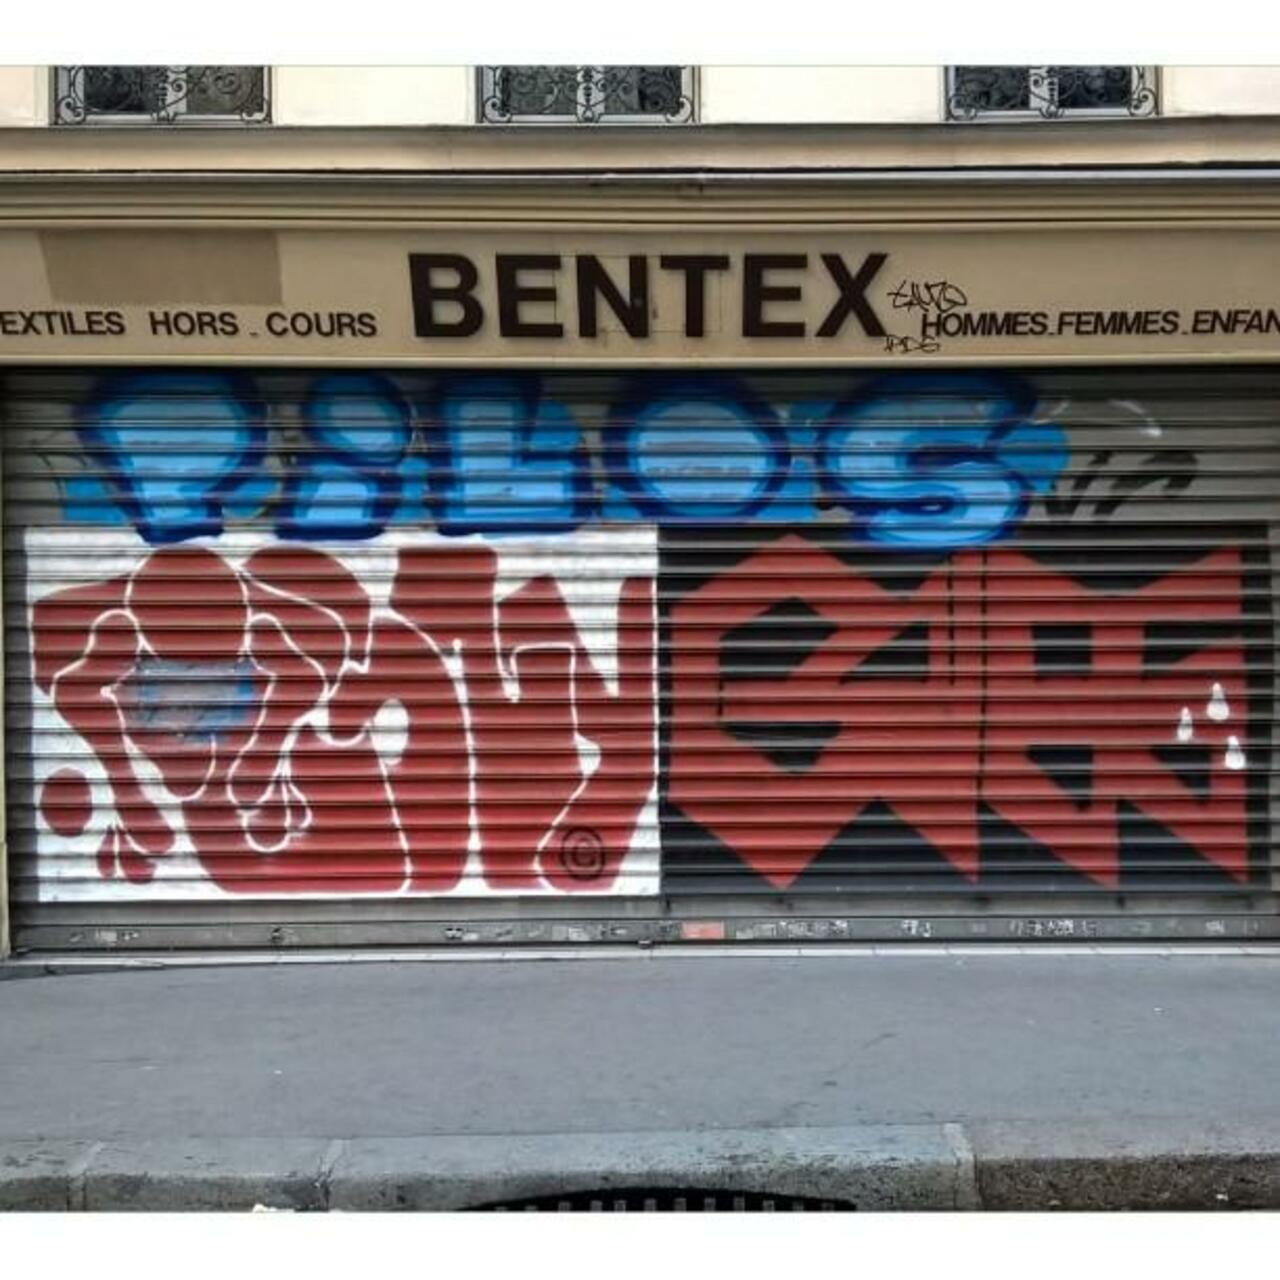 circumjacent_fr: #Paris #graffiti photo by maxdimontemarciano http://ift.tt/1VF9D15 #StreetArt http://t.co/0fXuWDZlz9